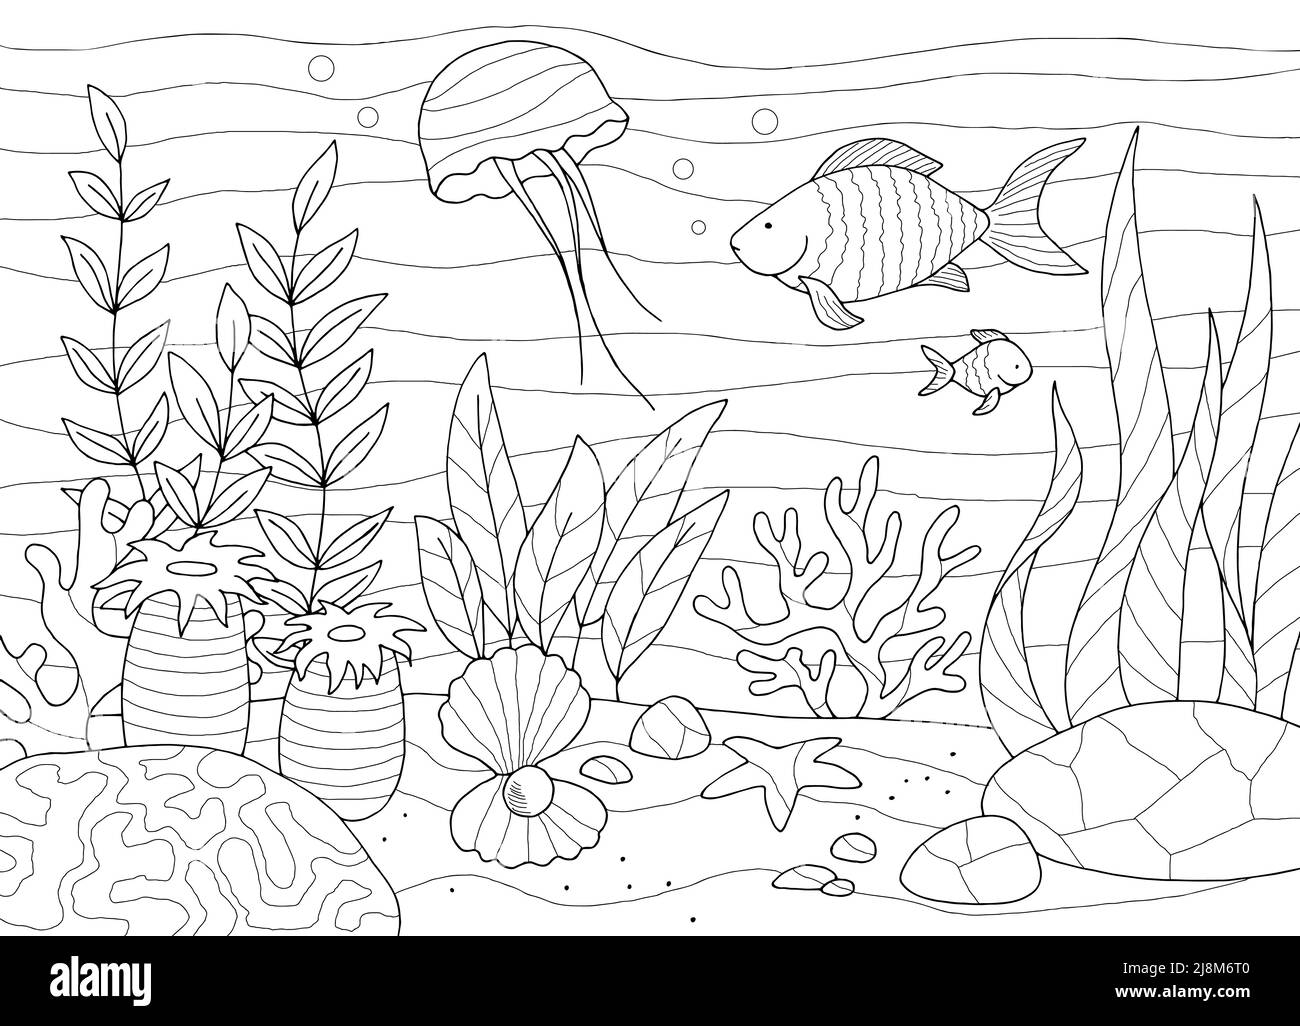 Unterwasser Färbung Grafik Meer schwarz weiß Skizze Illustration Vektor Stock Vektor